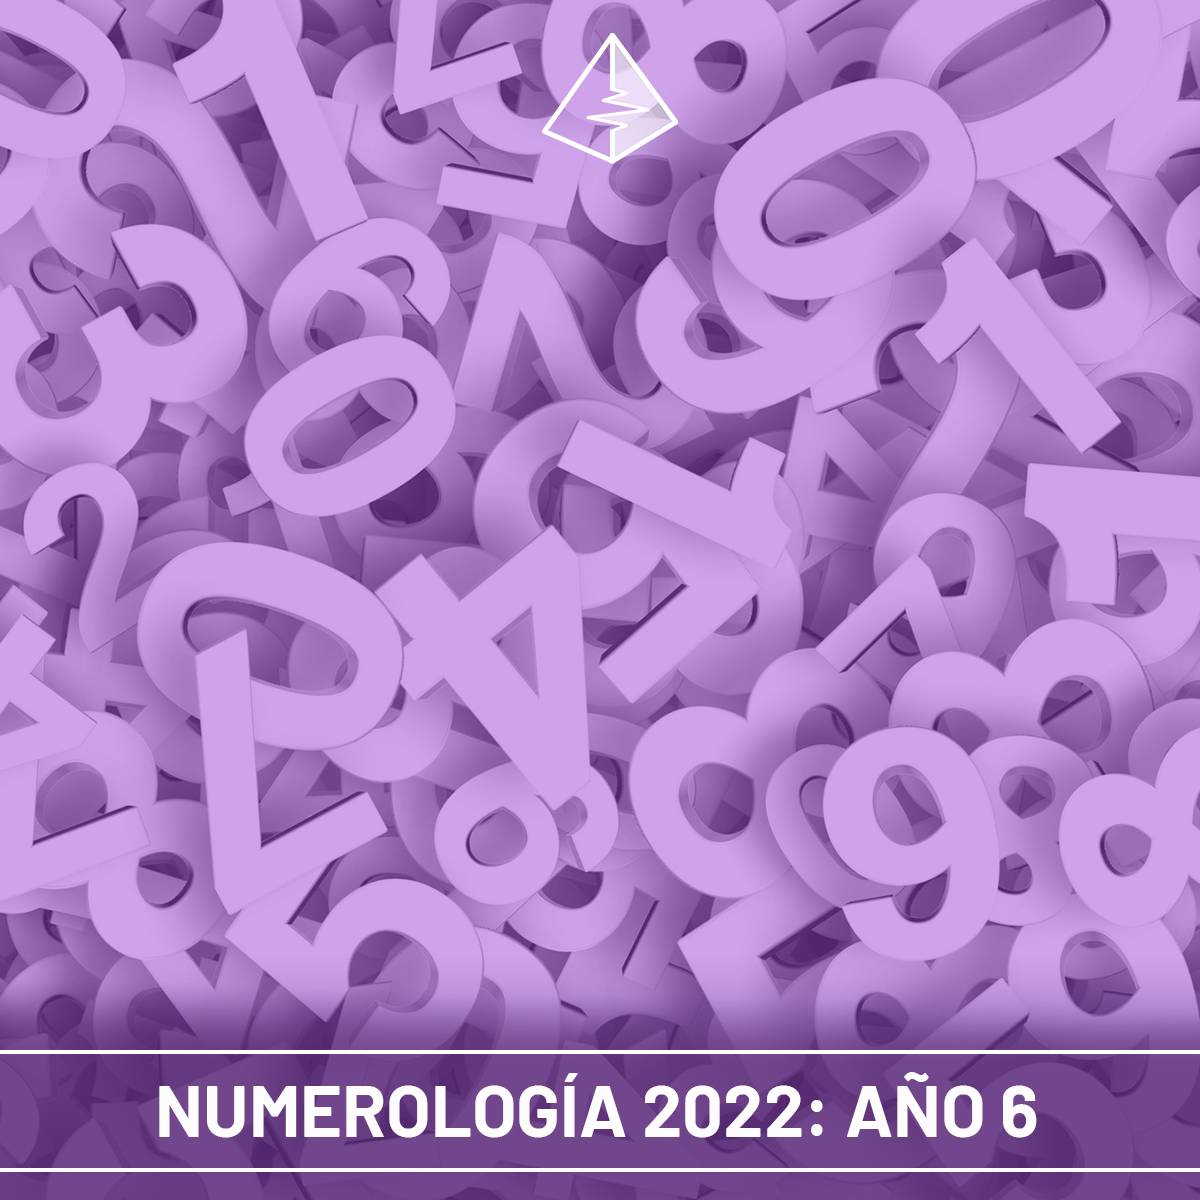 NUMEROLOGIA 2022